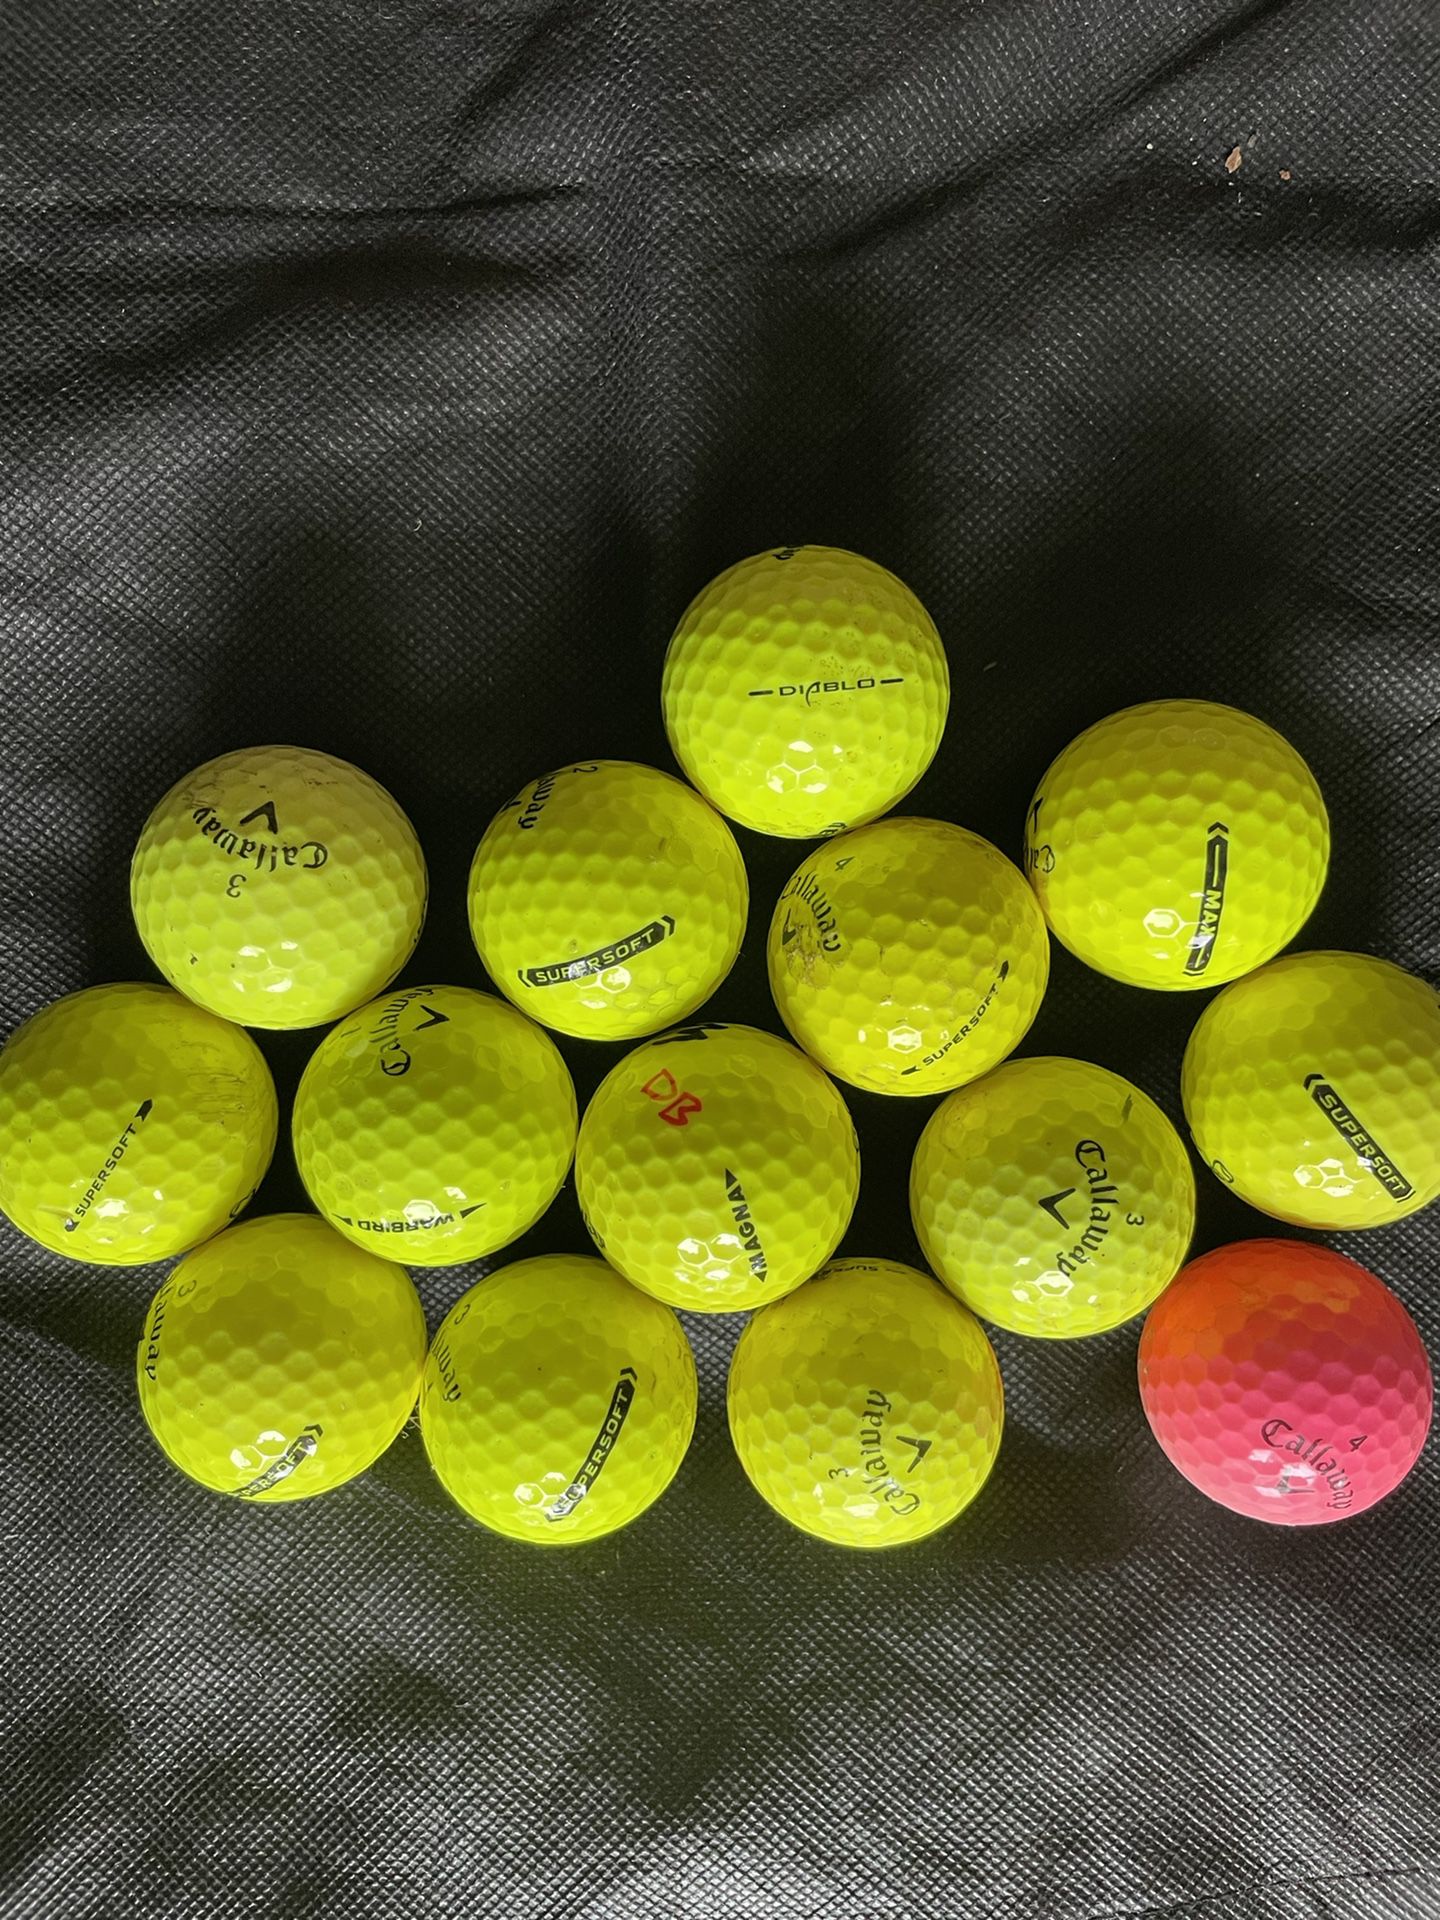 Callaway 52 golf balls